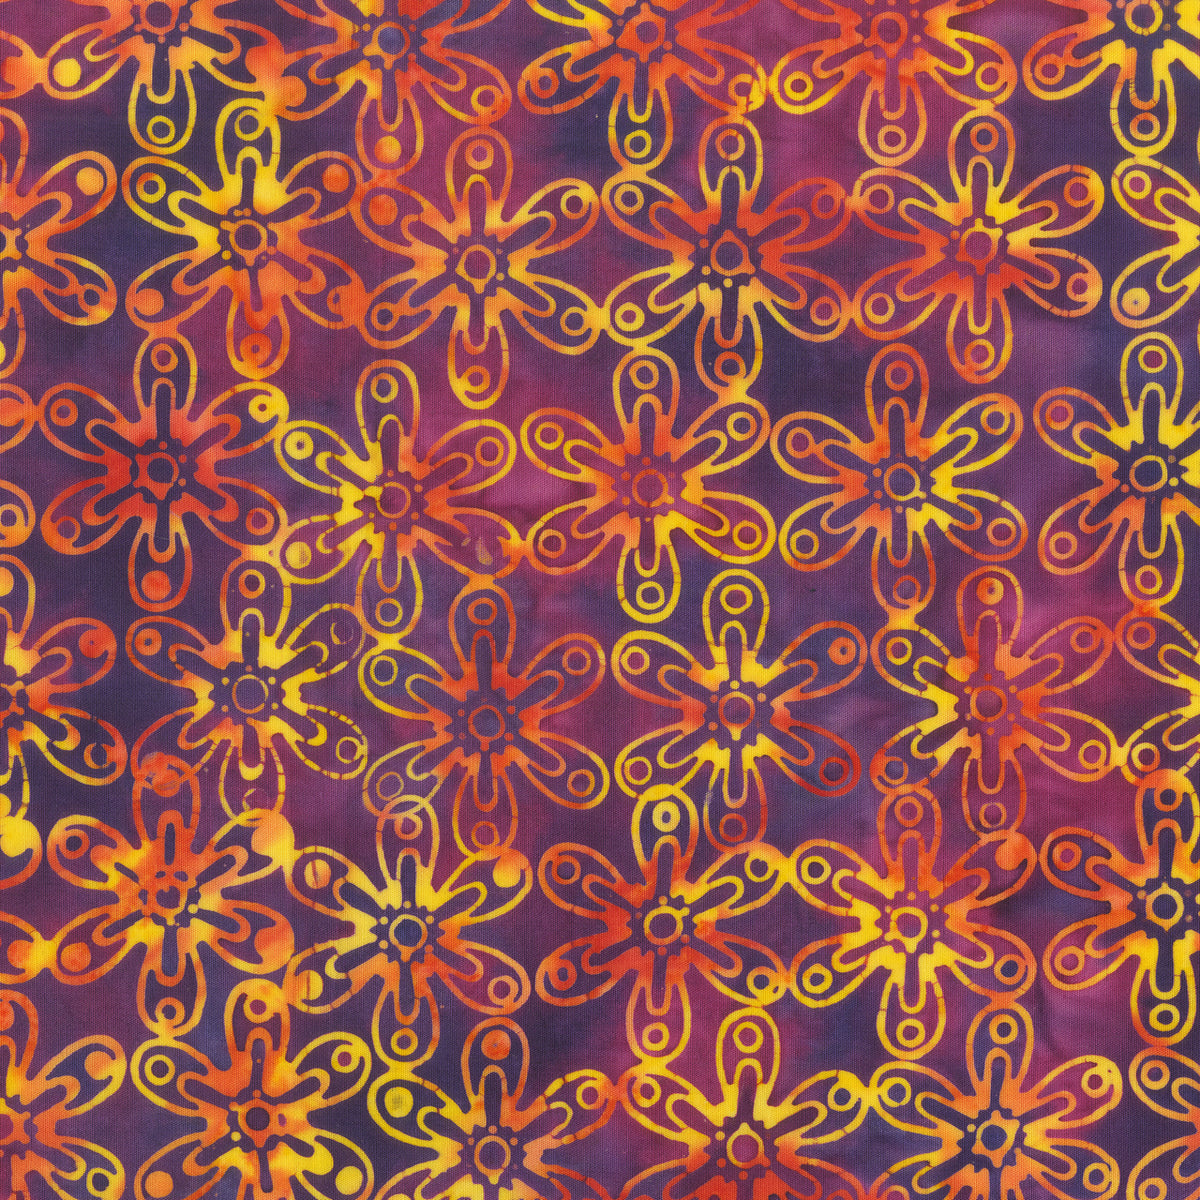 Anthology Designer Batik Quilt Fabric - Daisy Emblems in Red Violet - 342Q-1